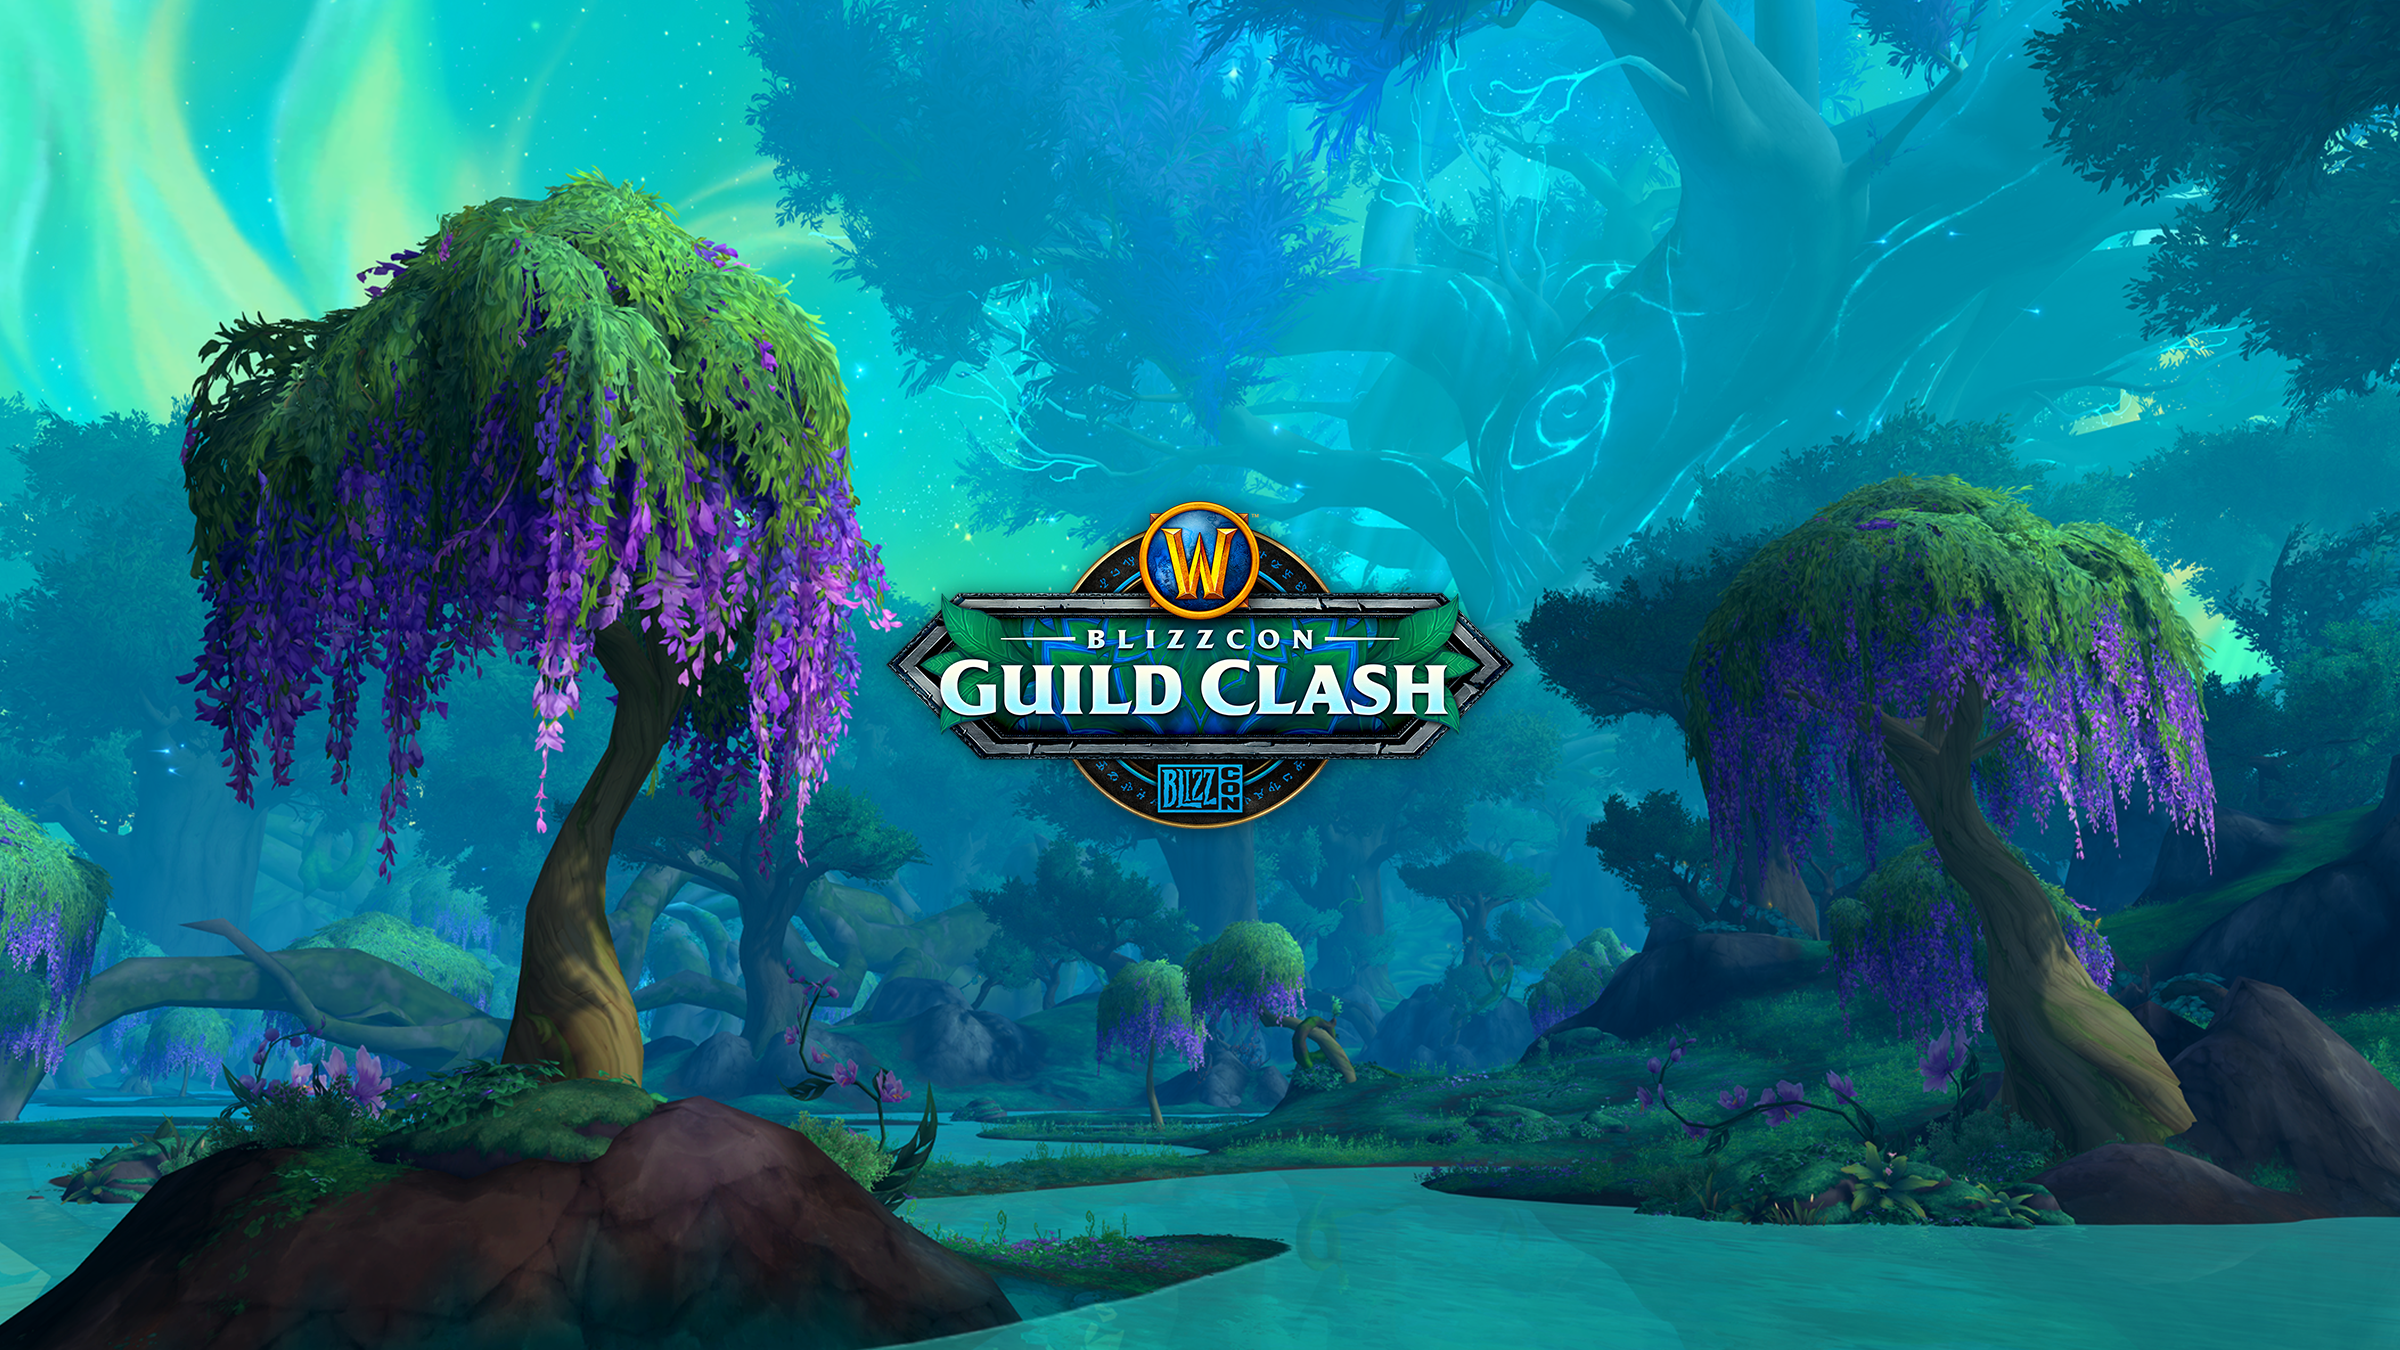 Wir stellen vor: der World of Warcraft® BlizzCon Guild Clash!